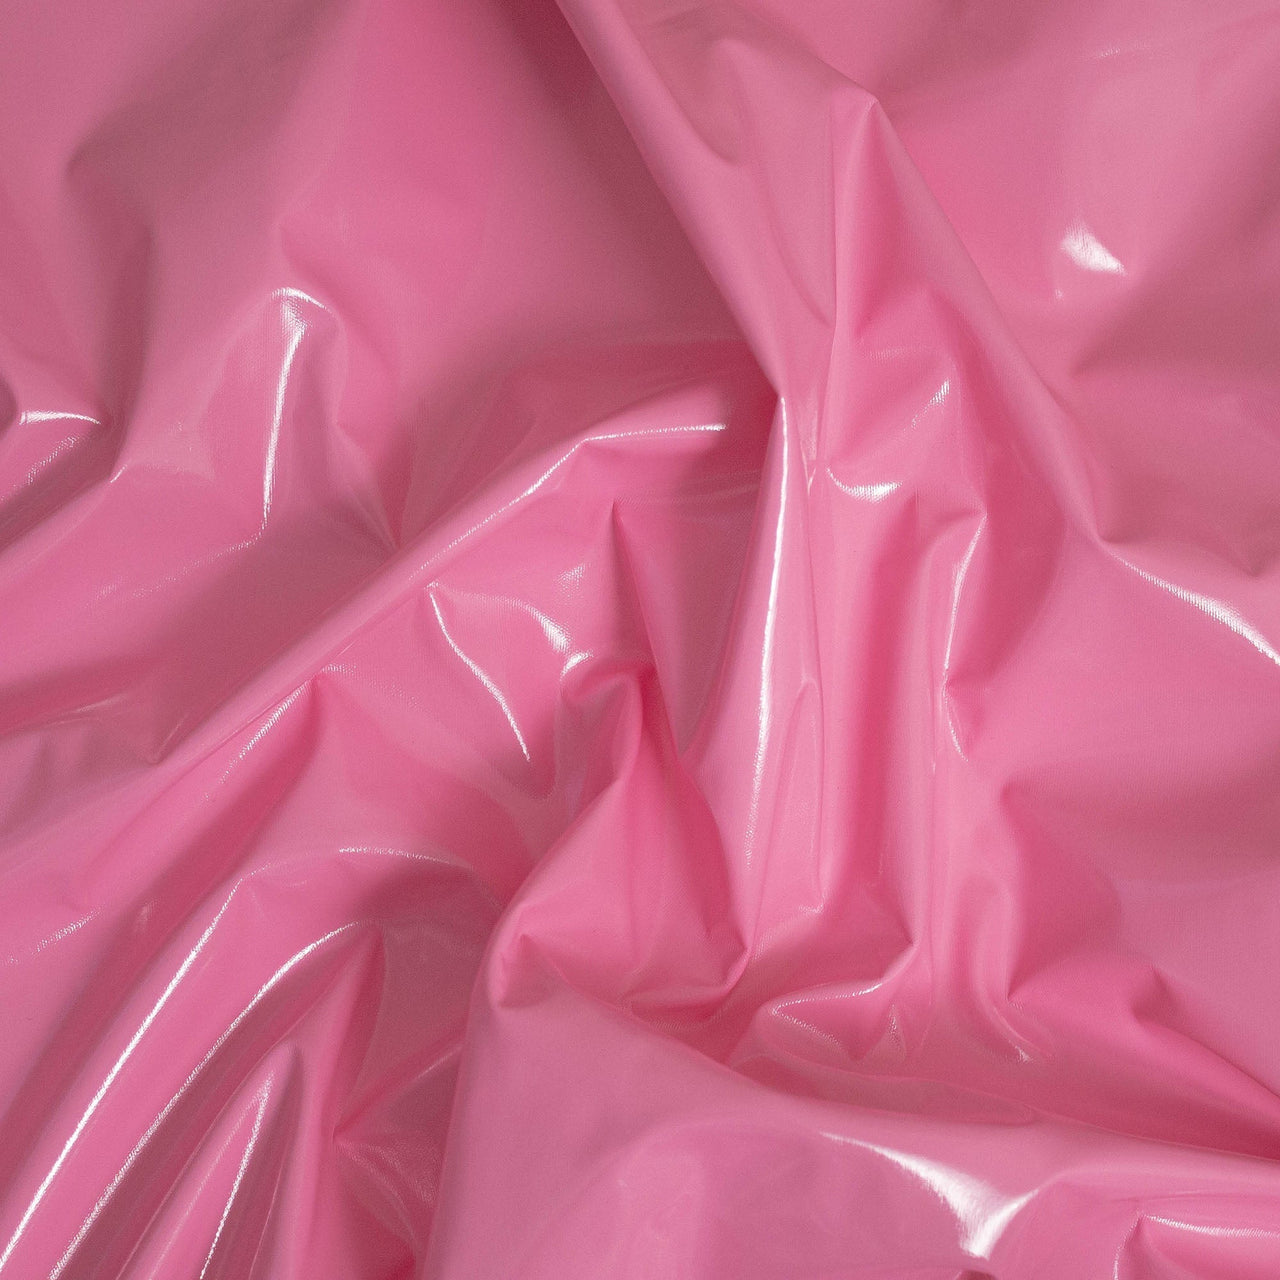 Tissu extensible brillant en PVC rose Barbie - Étirement naturel 1 sens - Enduit PU